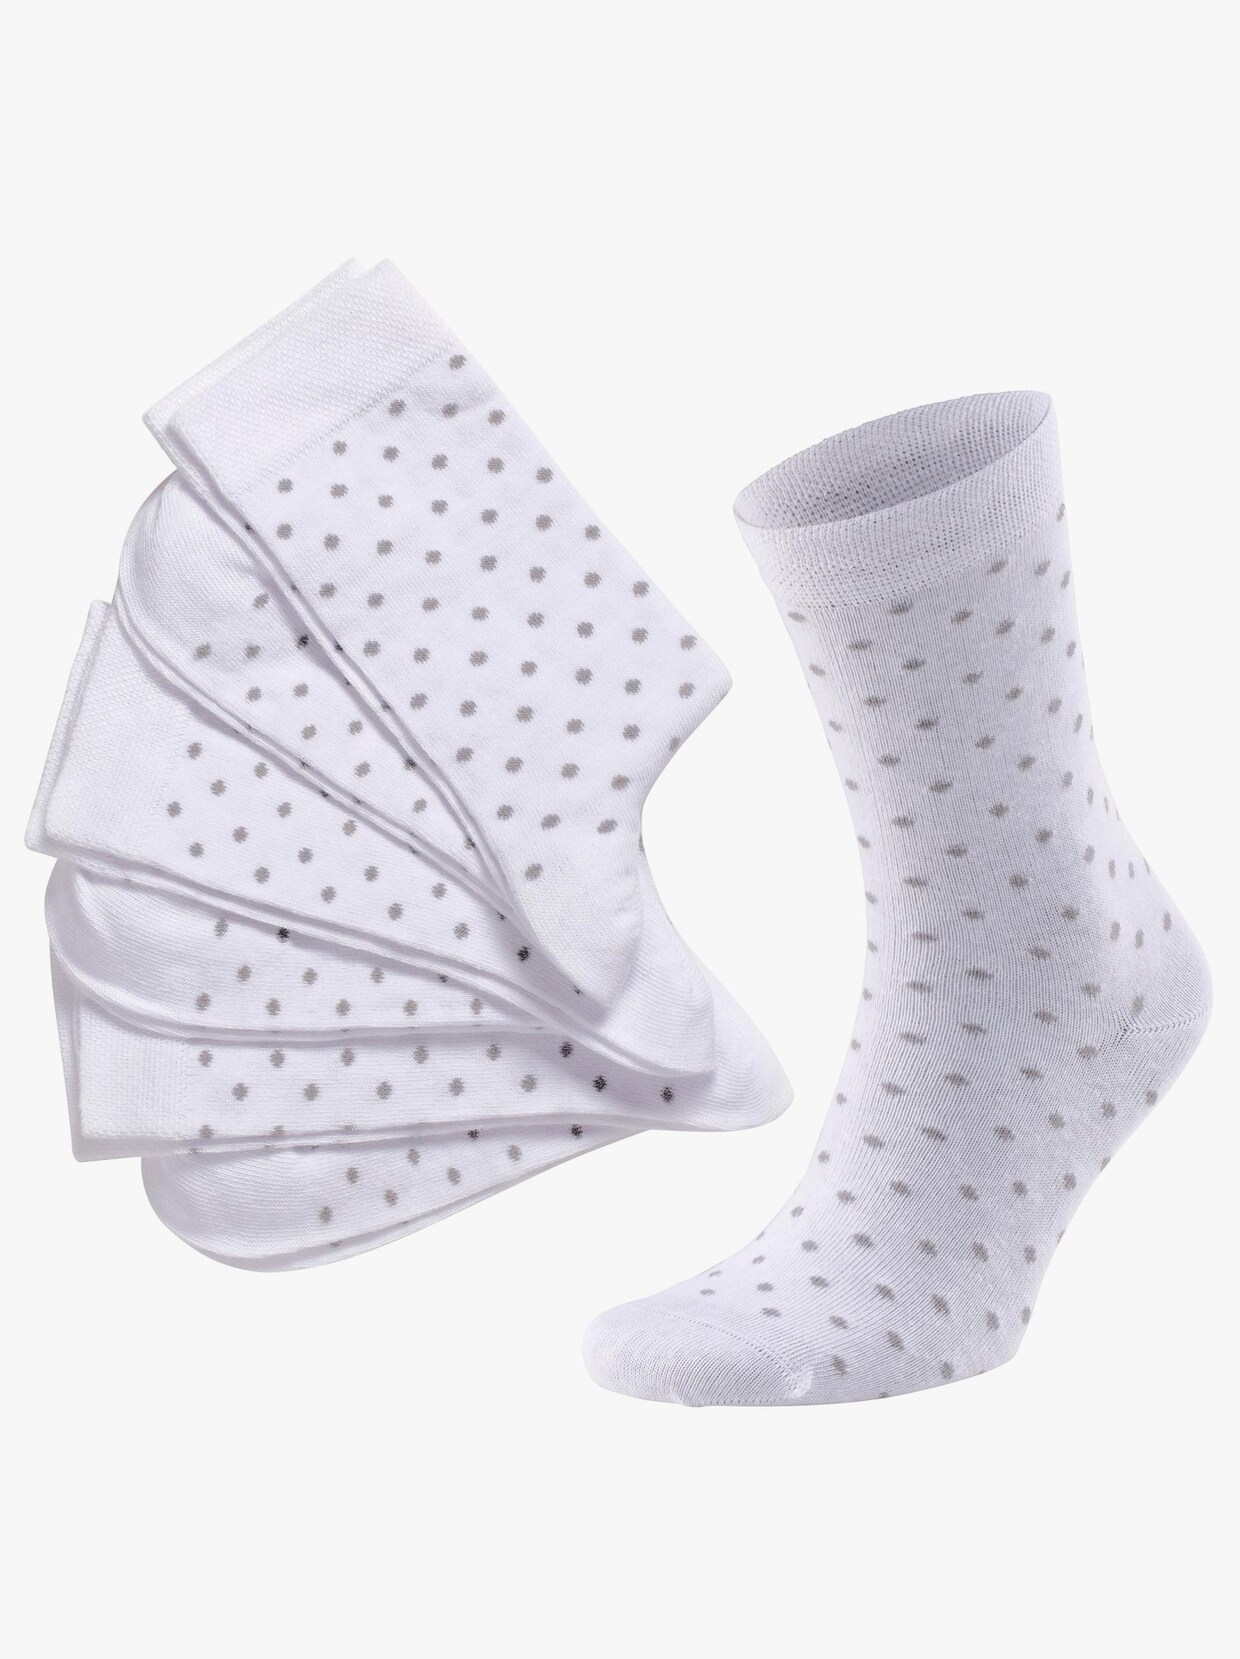 wäschepur Damen-Socken - weiß